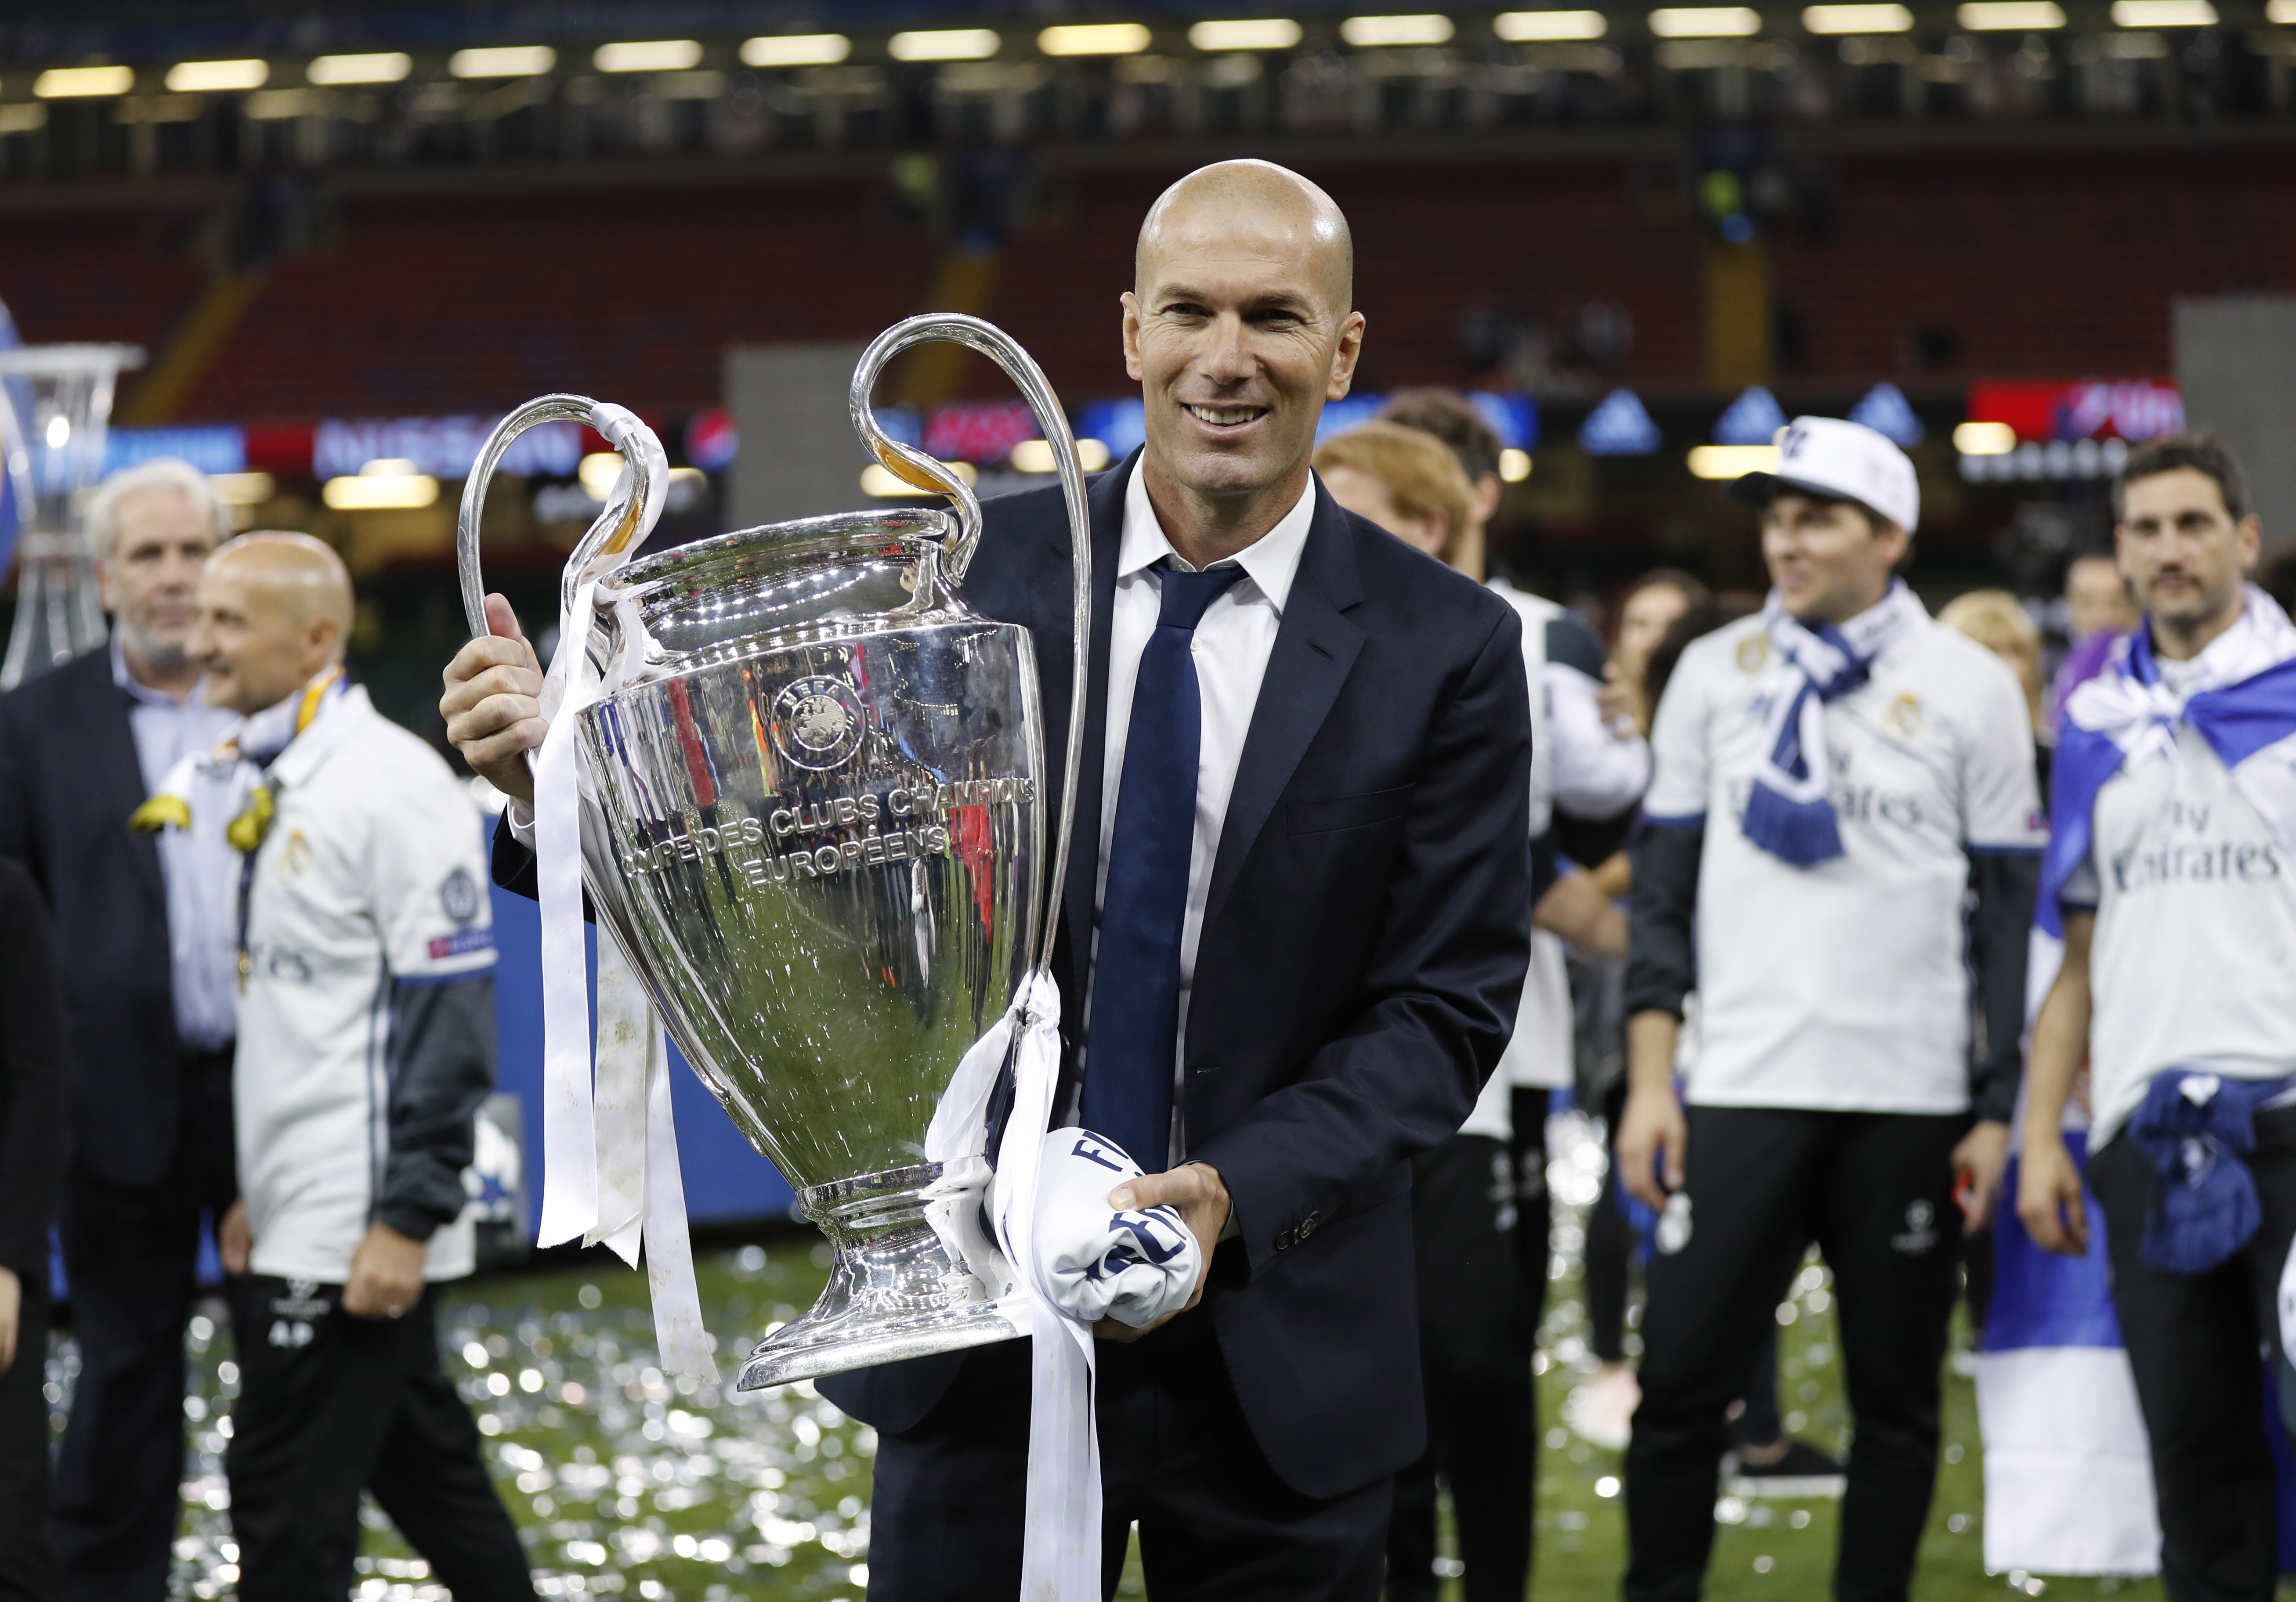 Тренер футбольного клуба "Реал" Мадрид Зинедин Зидан празднует победу клуба в Лиге Чемпионов. Фото: Reuters / Eddie Keogh Livepic